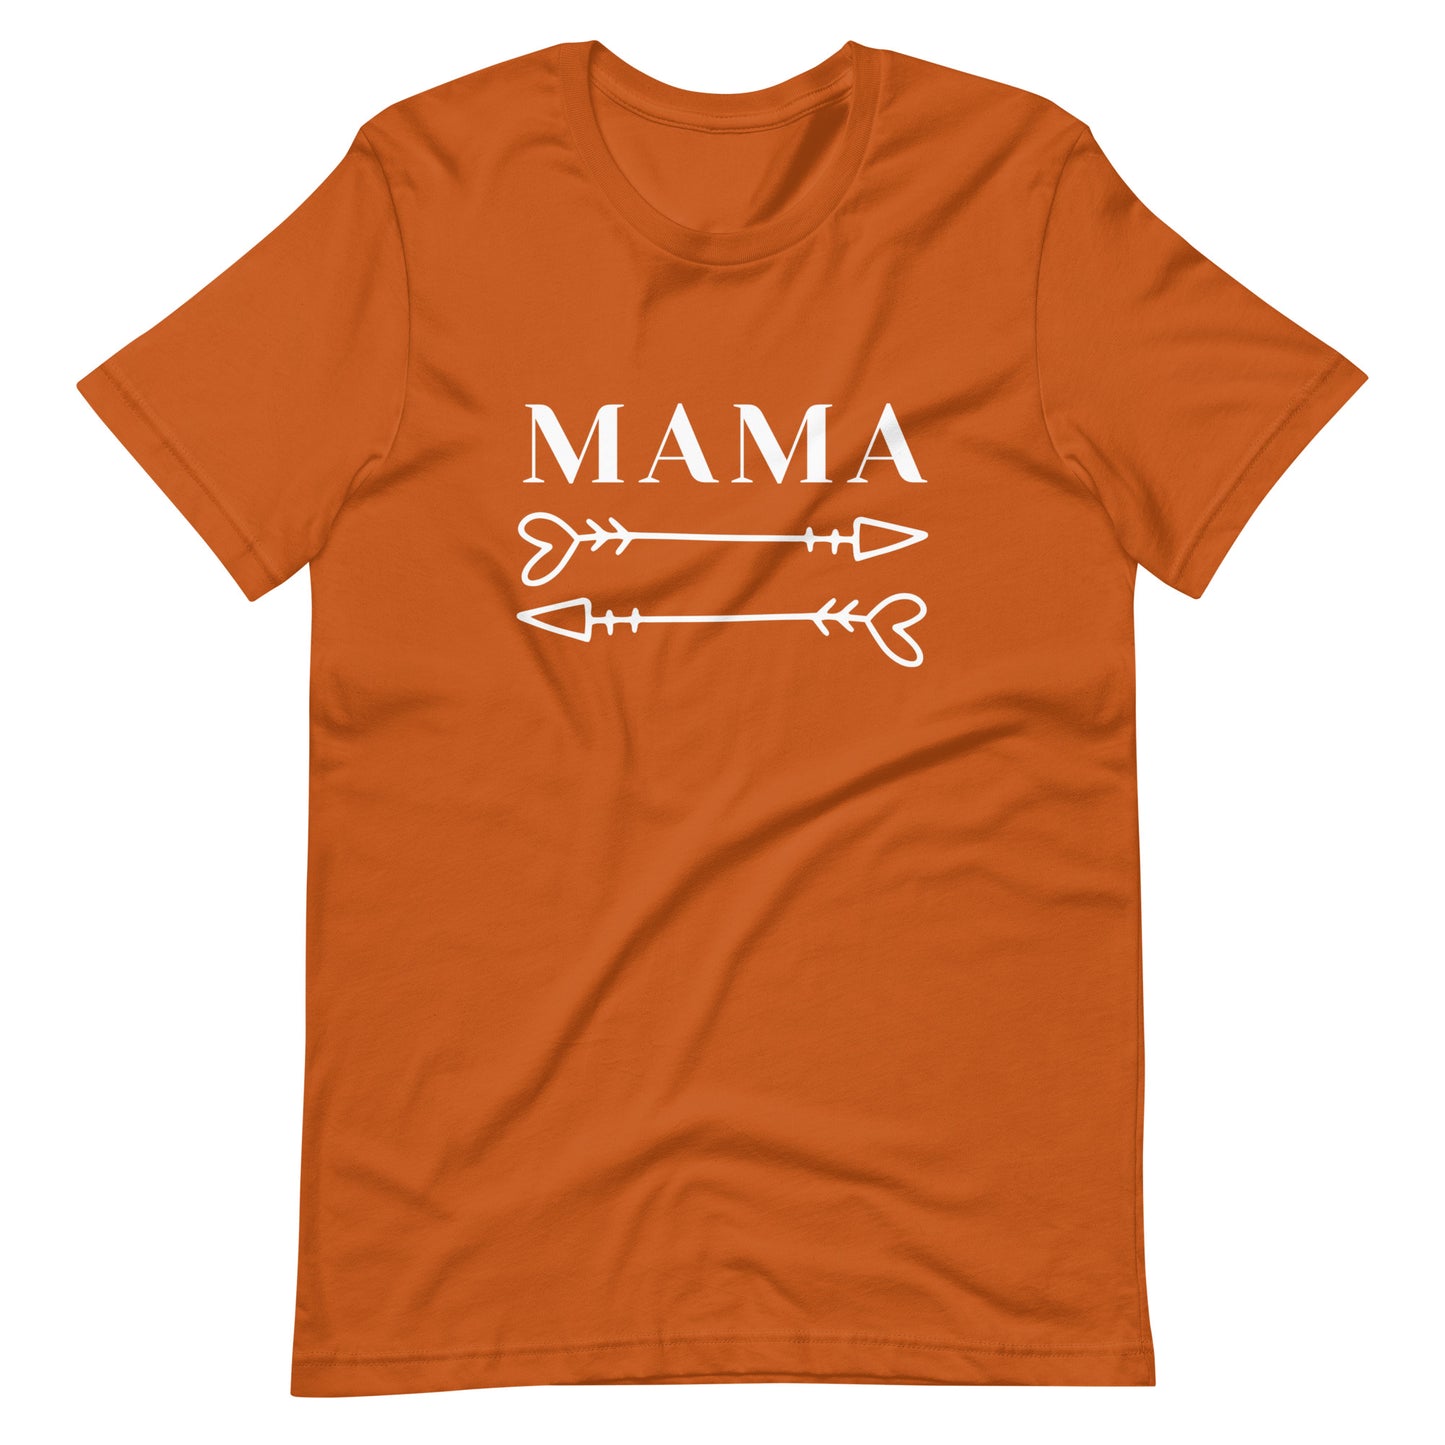 Mama arrows t-shirt